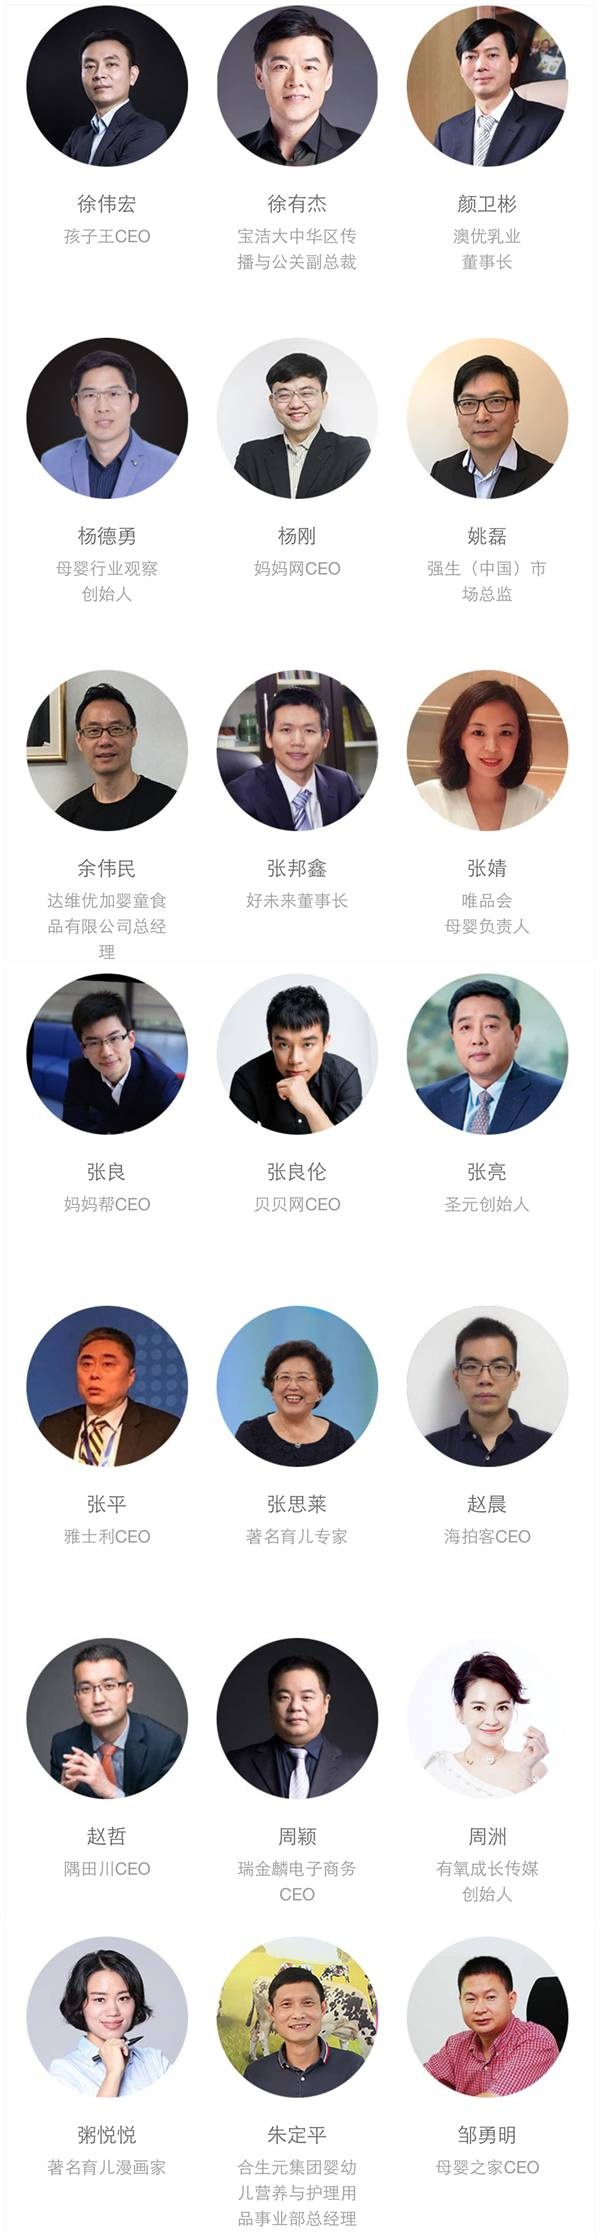 2017中国母婴企业家领袖峰会暨樱桃大赏颁奖盛典 “边界与未来”解析母婴新趋势